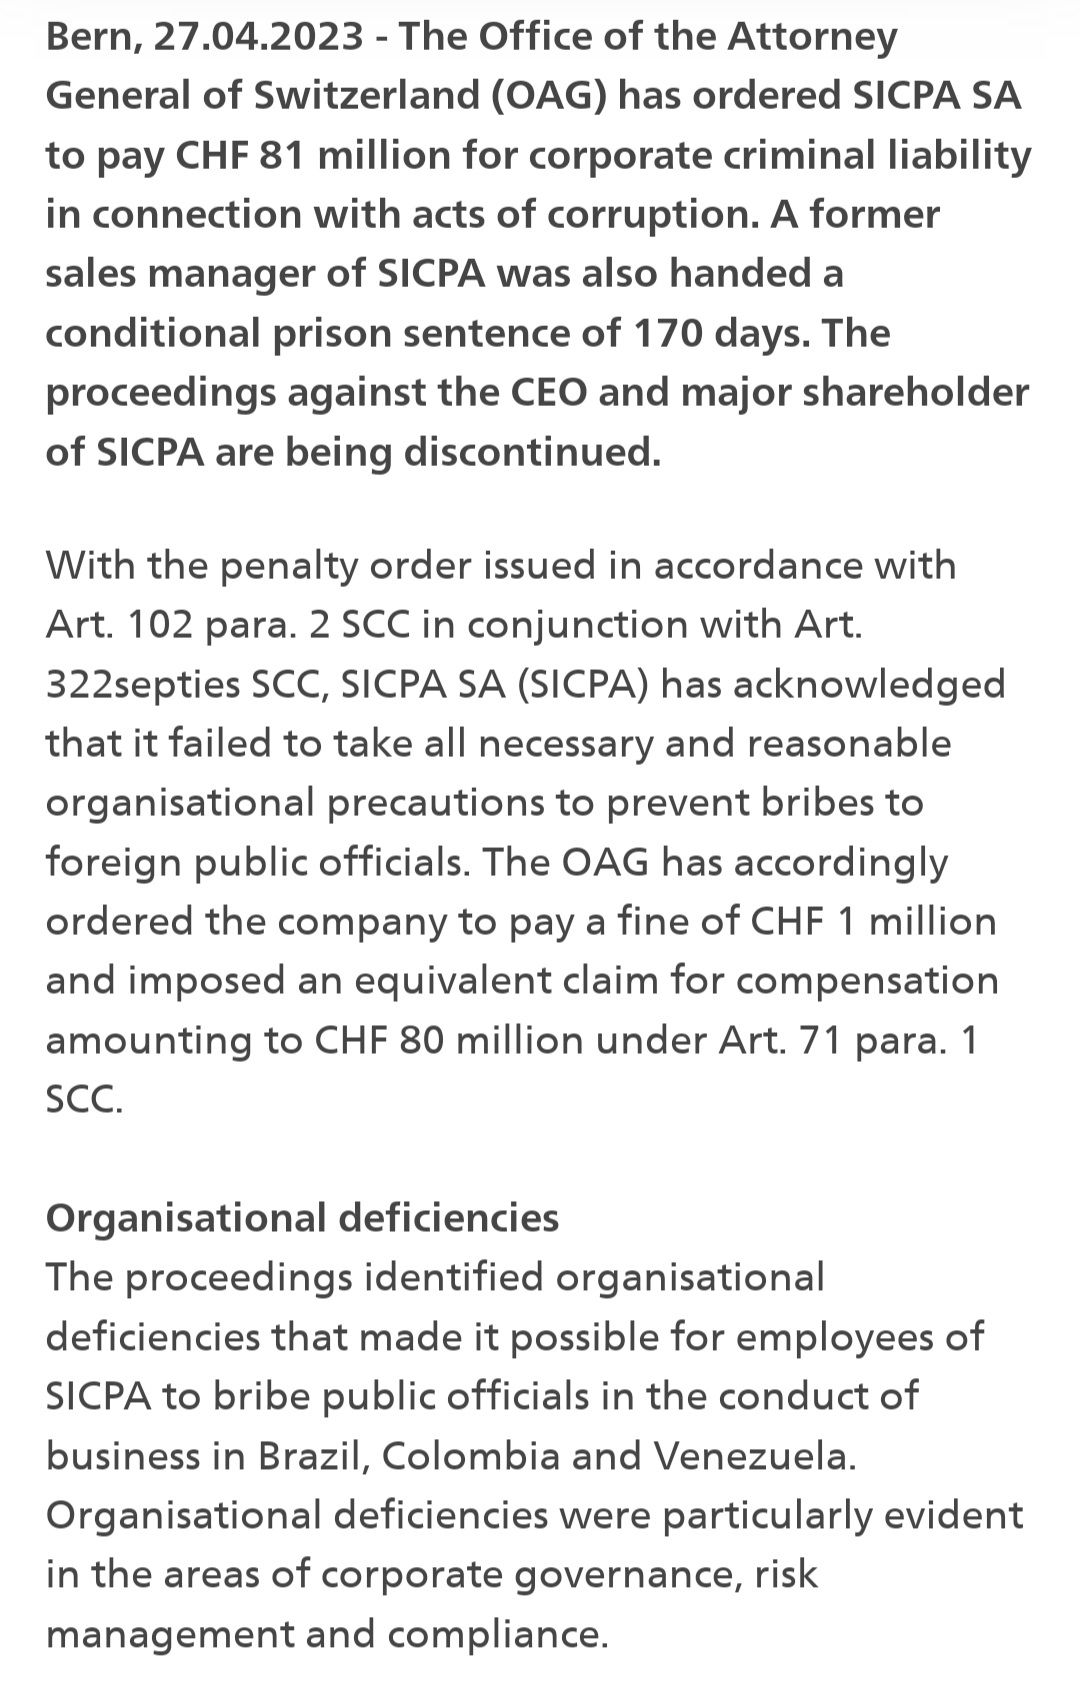 La Fiscalía condenó a los directivos de la empresa de seguridad SICPA al pago de 90,6 millones de dólares por el pago de sobornos.